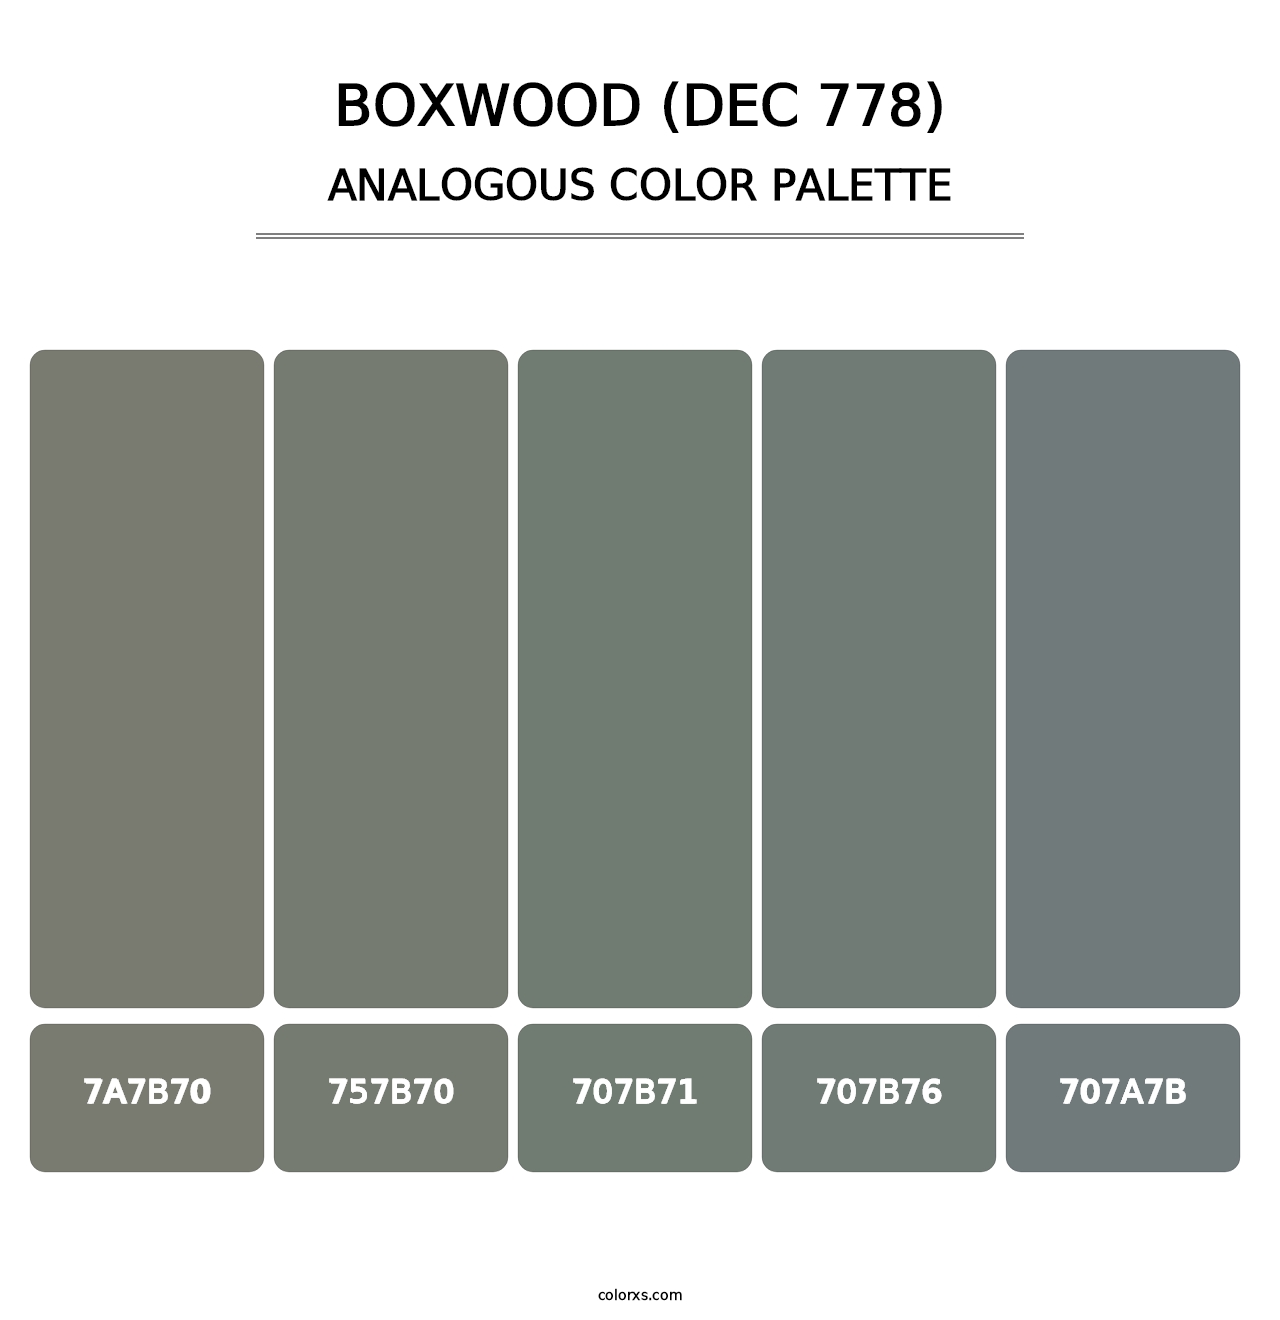 Boxwood (DEC 778) - Analogous Color Palette